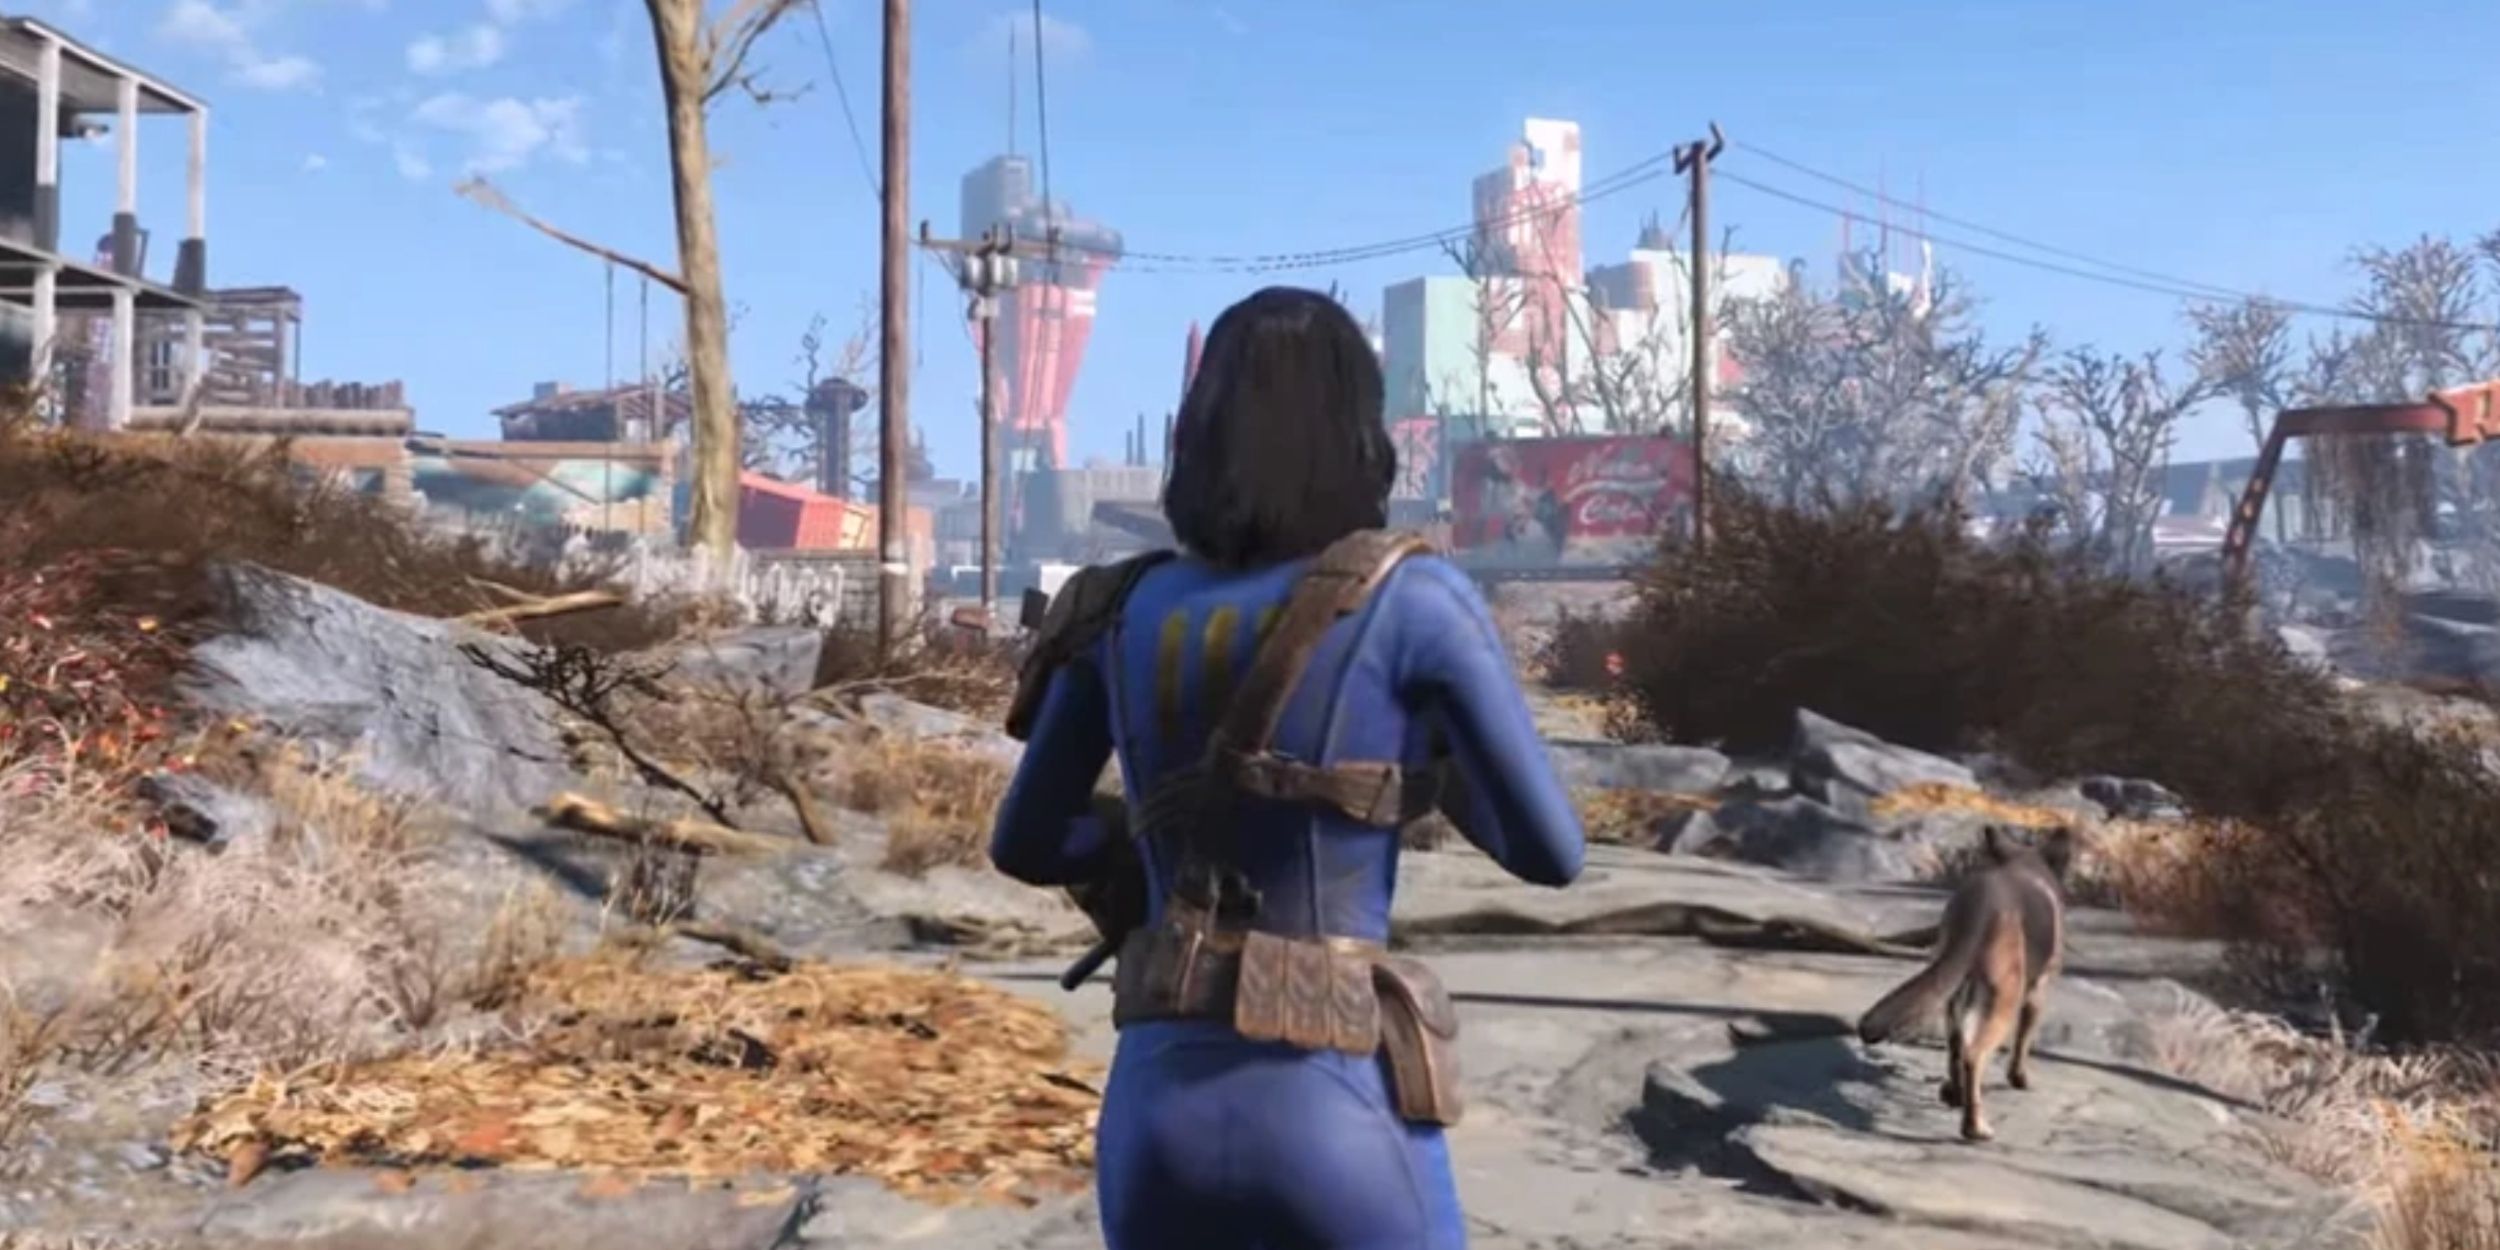 Мод Fallout 4 позволяет удалить обновление следующего поколения